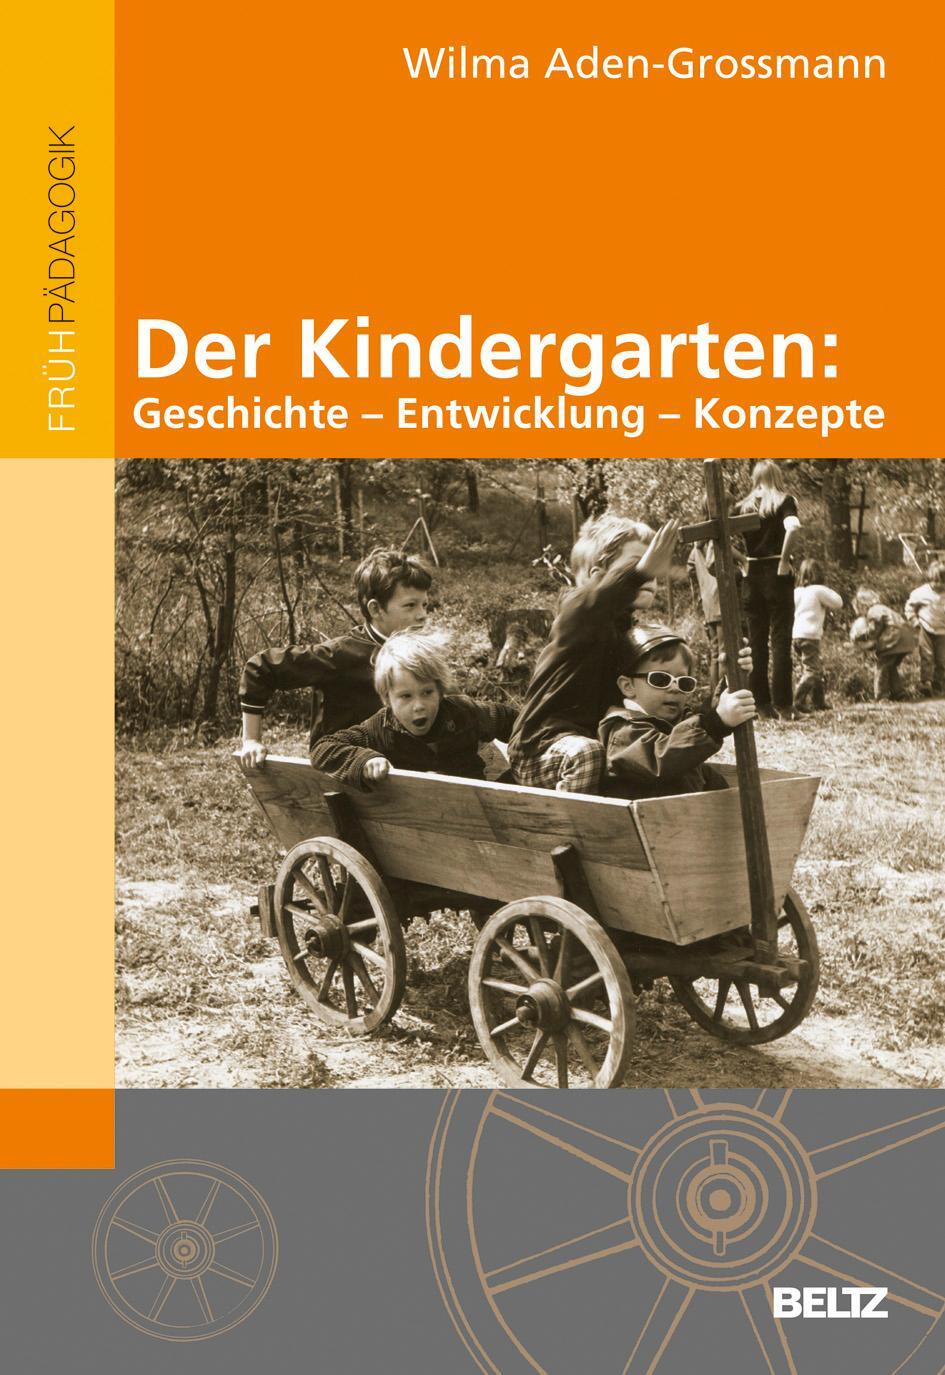 Der Kindergarten: Geschichte - Entwicklung - Konzepte - Aden-Grossmann, Wilma